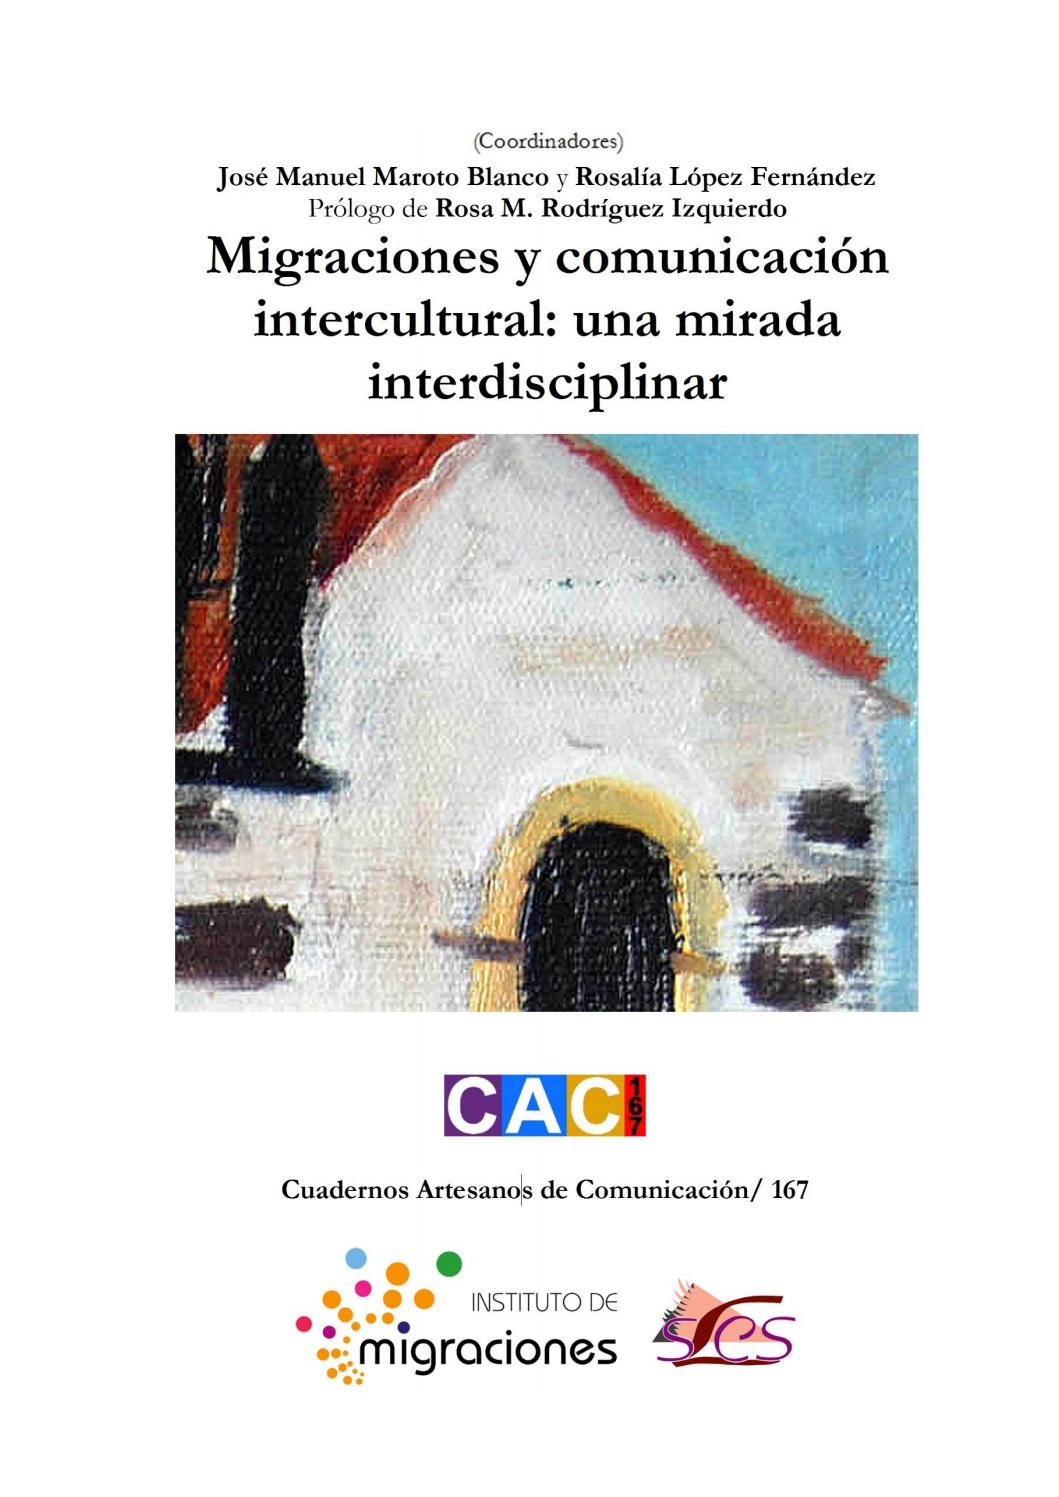 Imagen de portada del libro Migraciones y comunicación intercultural